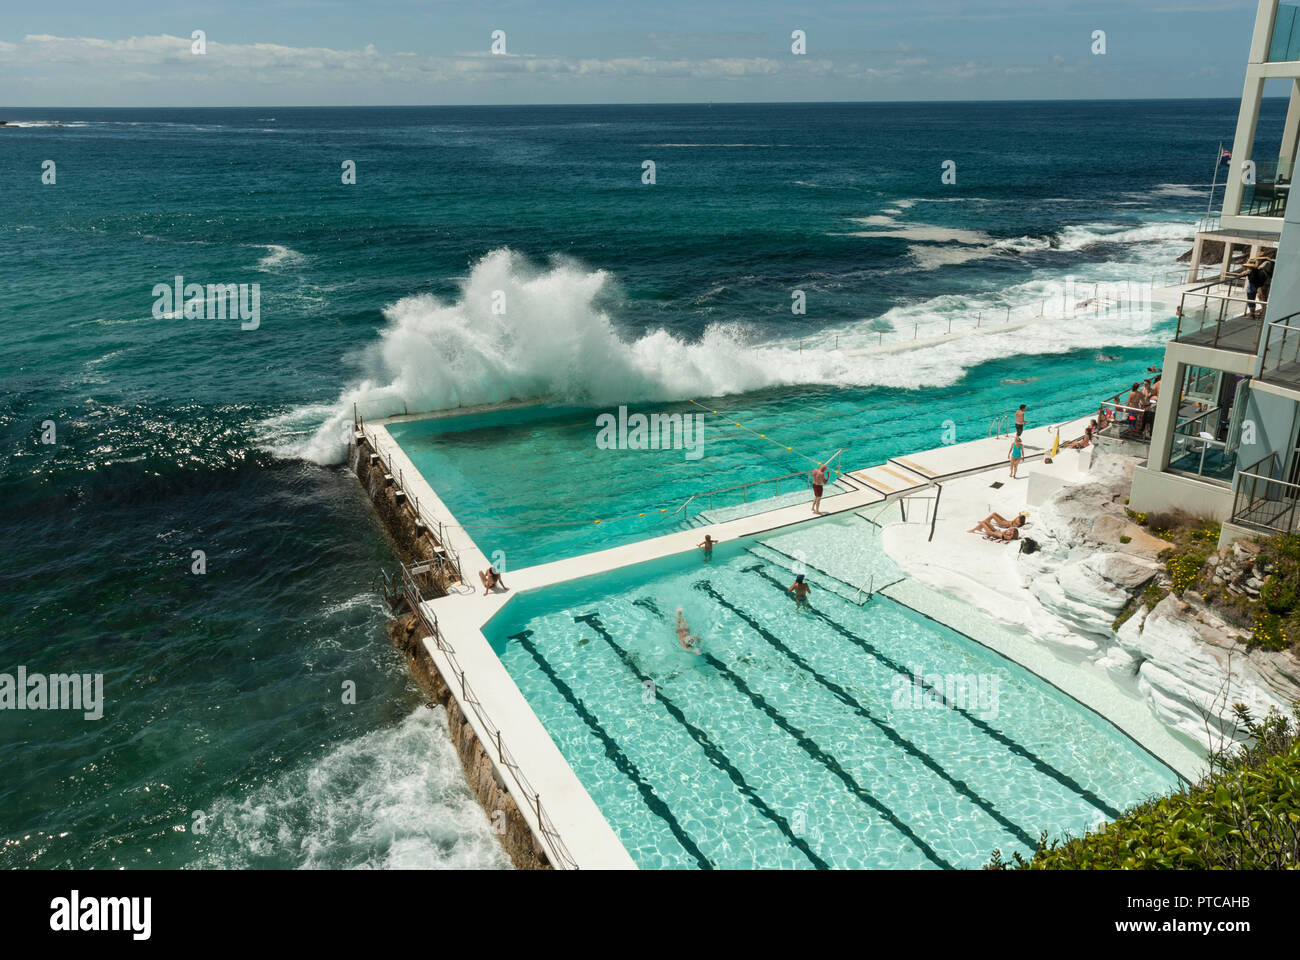 Onde enormi cascading su Bondi Iceberg acqua di mare piscine esterne (Sydney). Sole e attraente verde blu piscine con alcune persone in piscina. Foto Stock